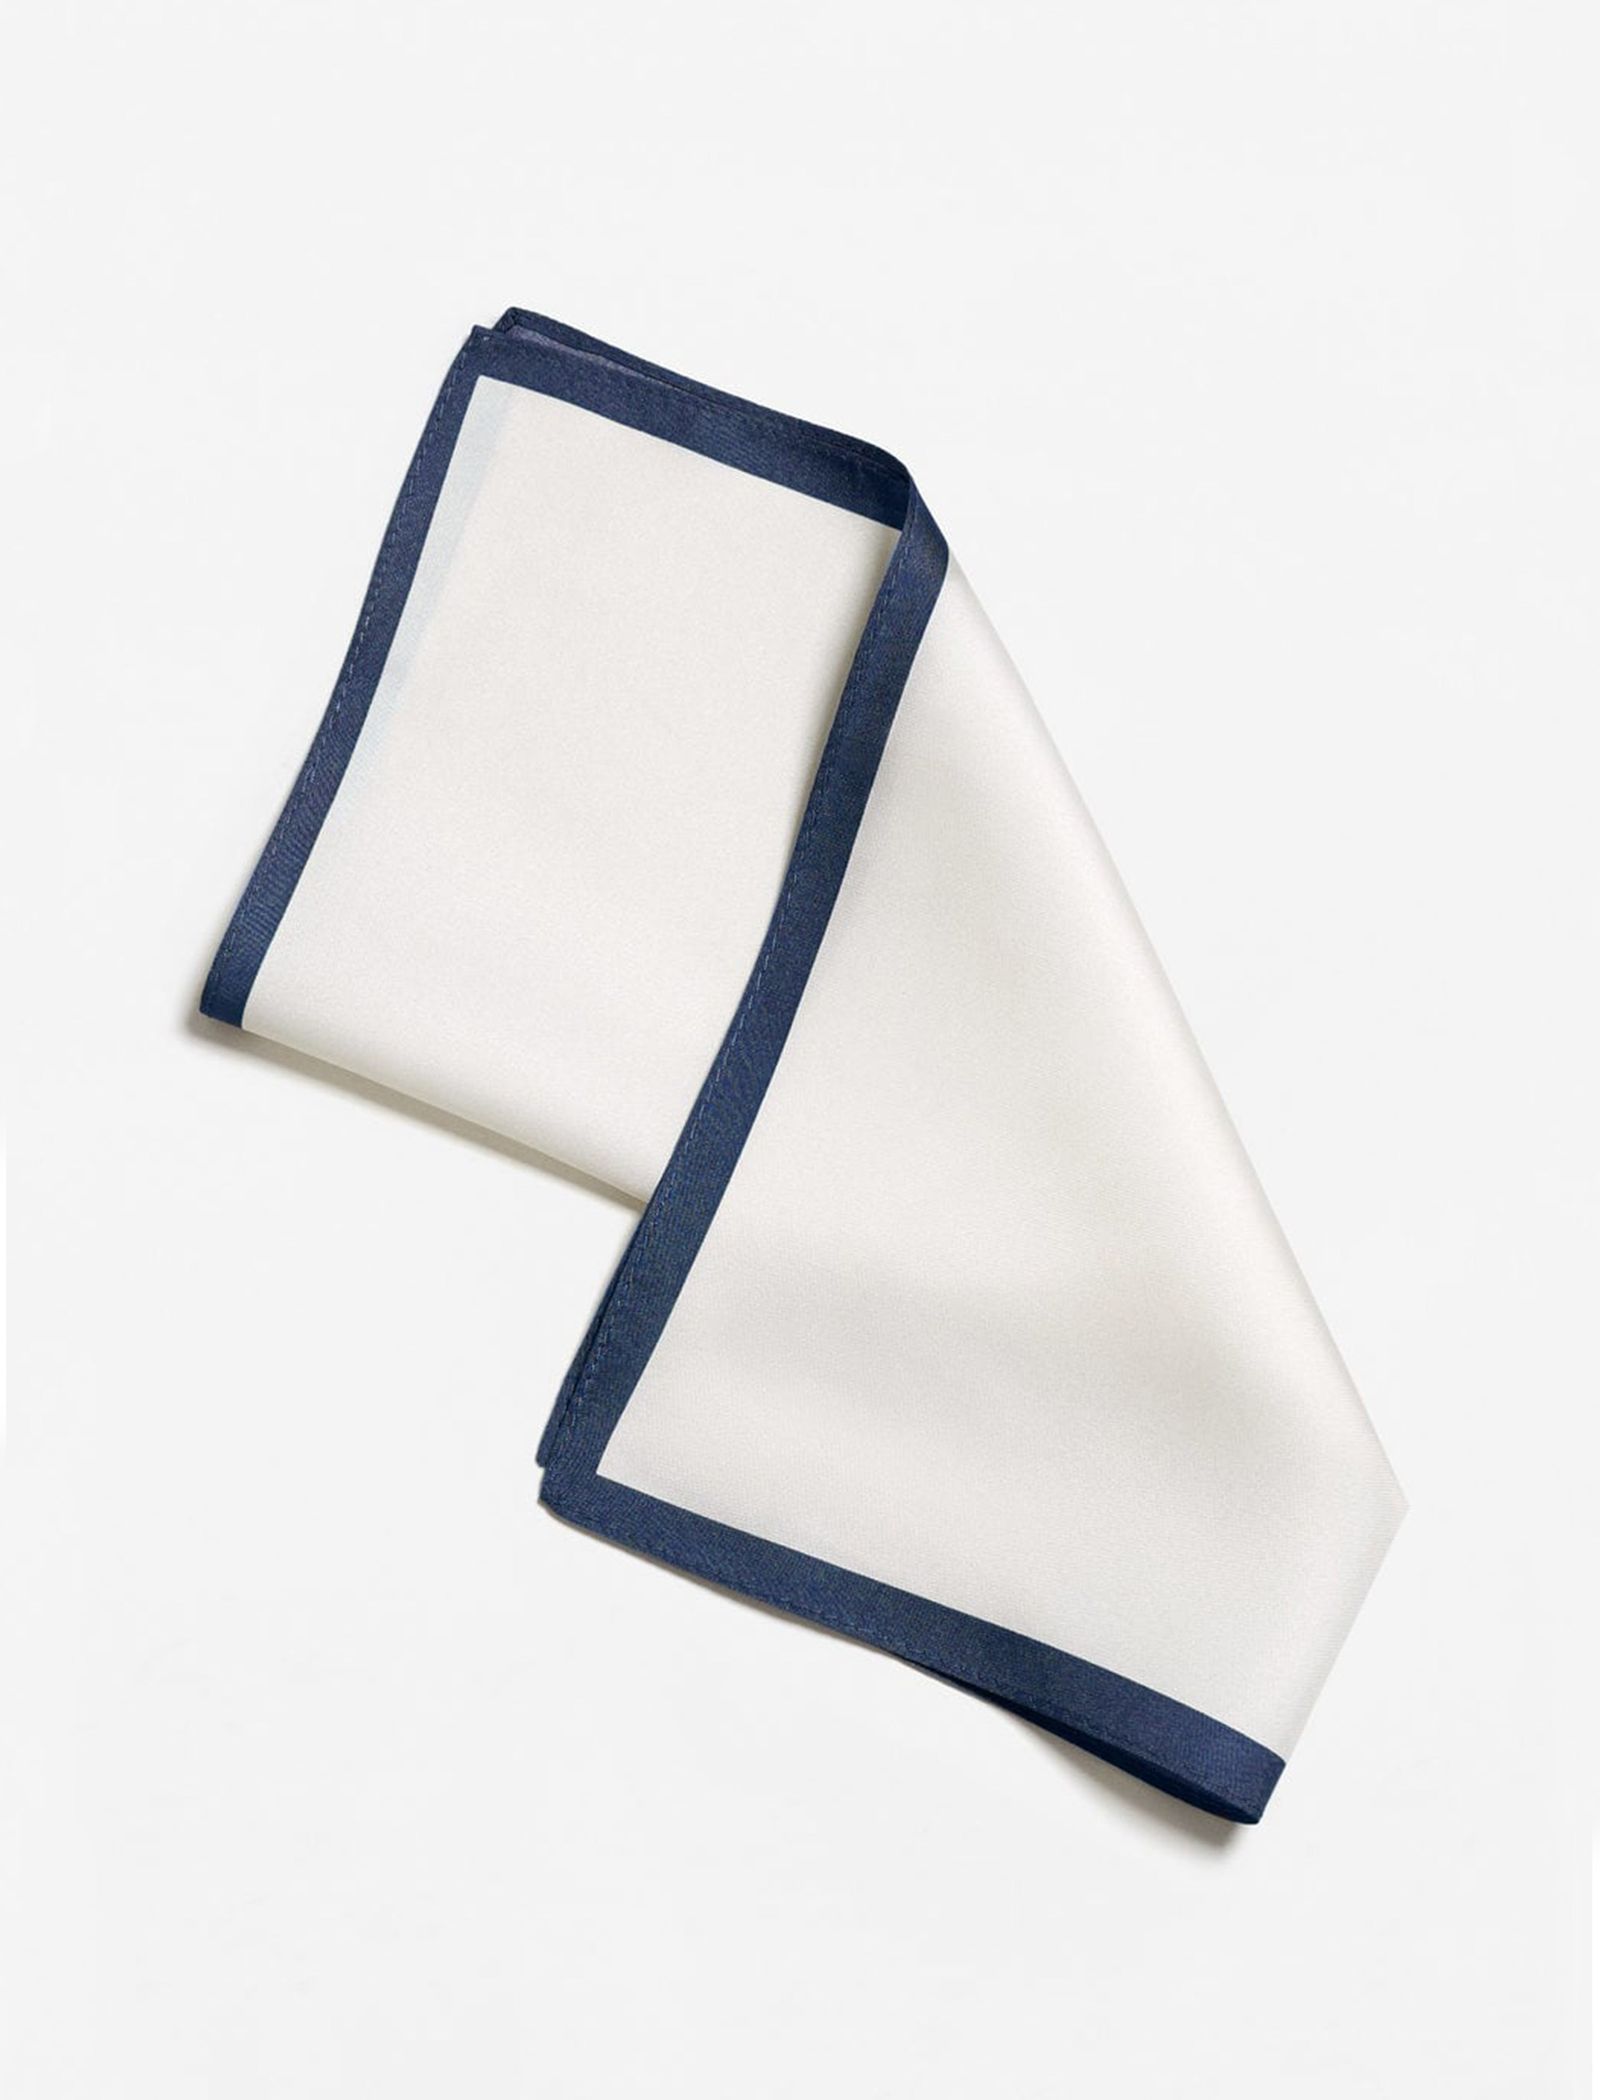 دستمال جیب ابریشم ساده مردانه - مانگو - سفيد و سرمه اي - 3